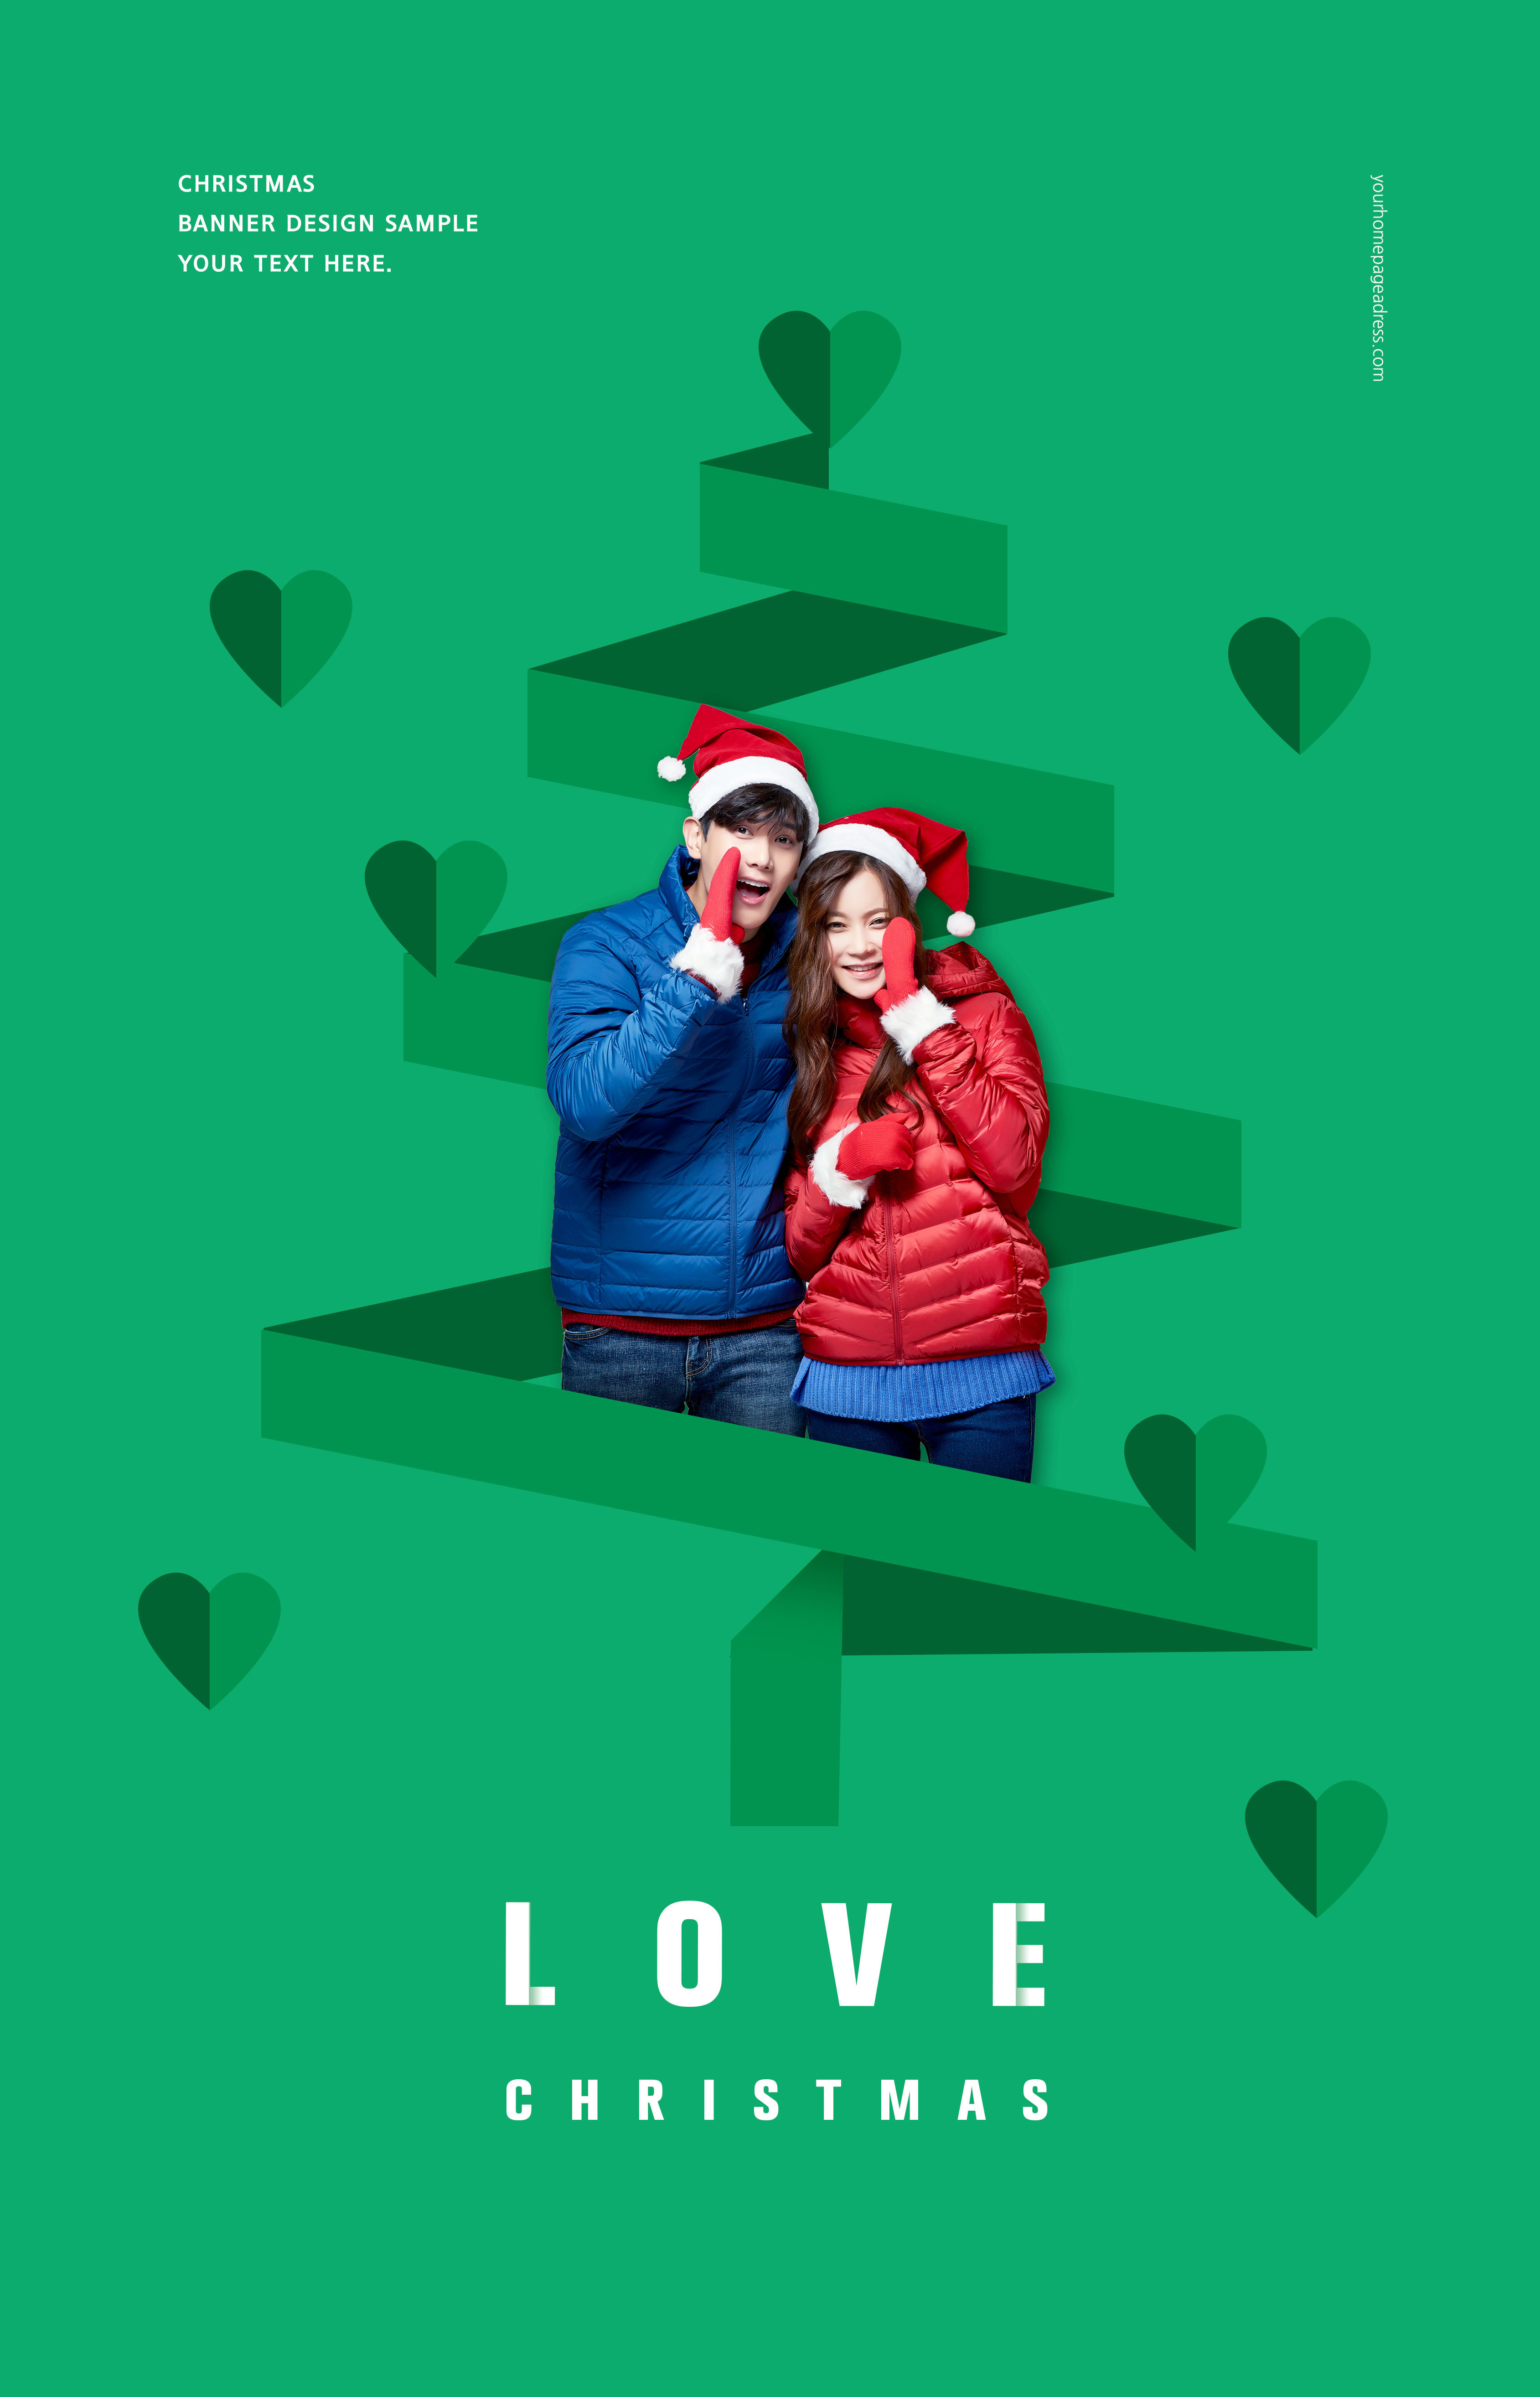 暖冬浪漫圣诞告白/购物主题海报套装插图(4)